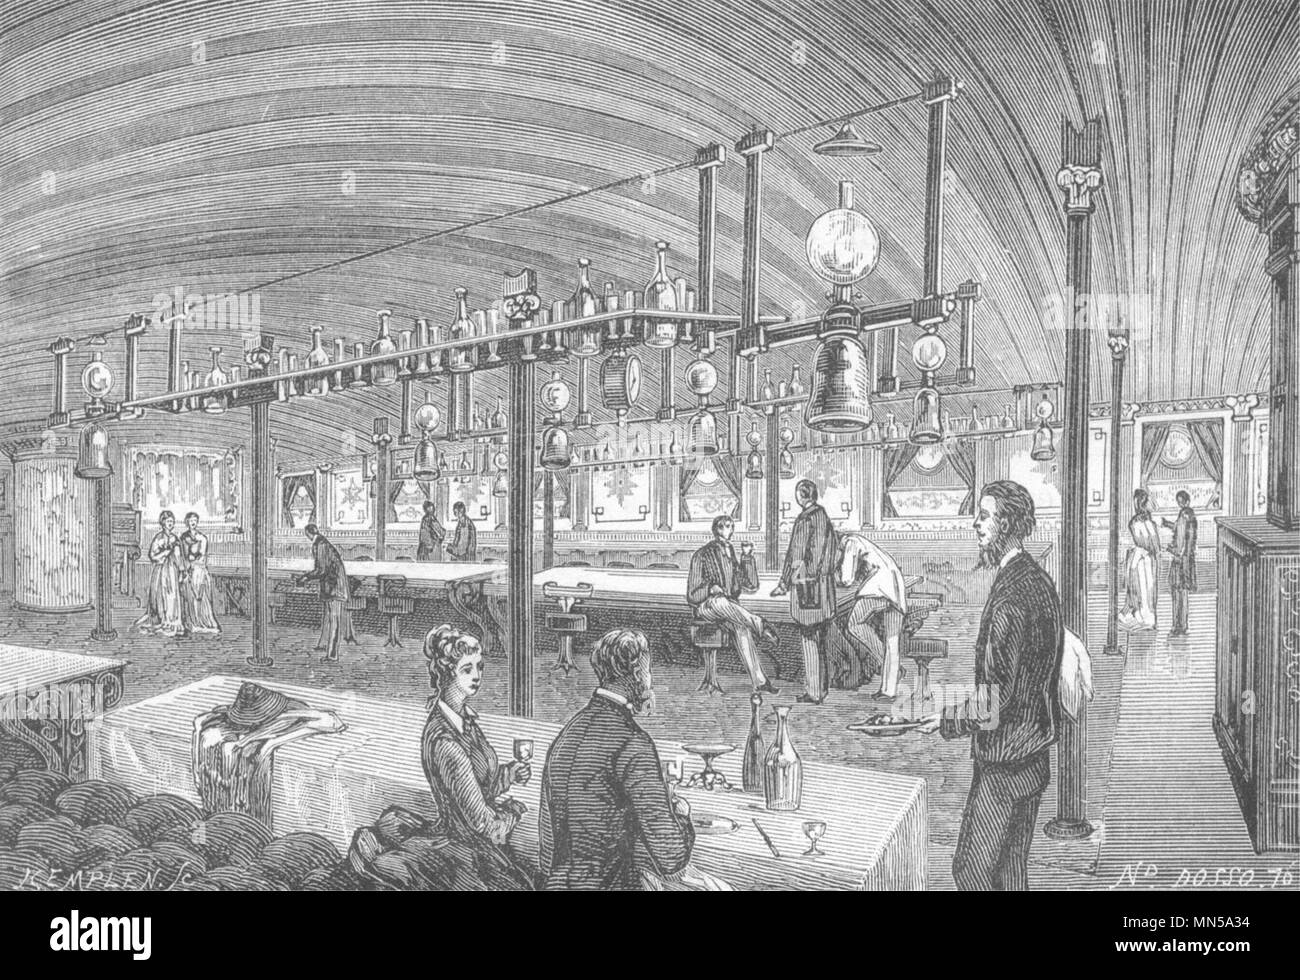 SEINE-MARITIME. Le Havre. Salon- salle a Manger du paquebot Kanada 1880 Drucken Stockfoto